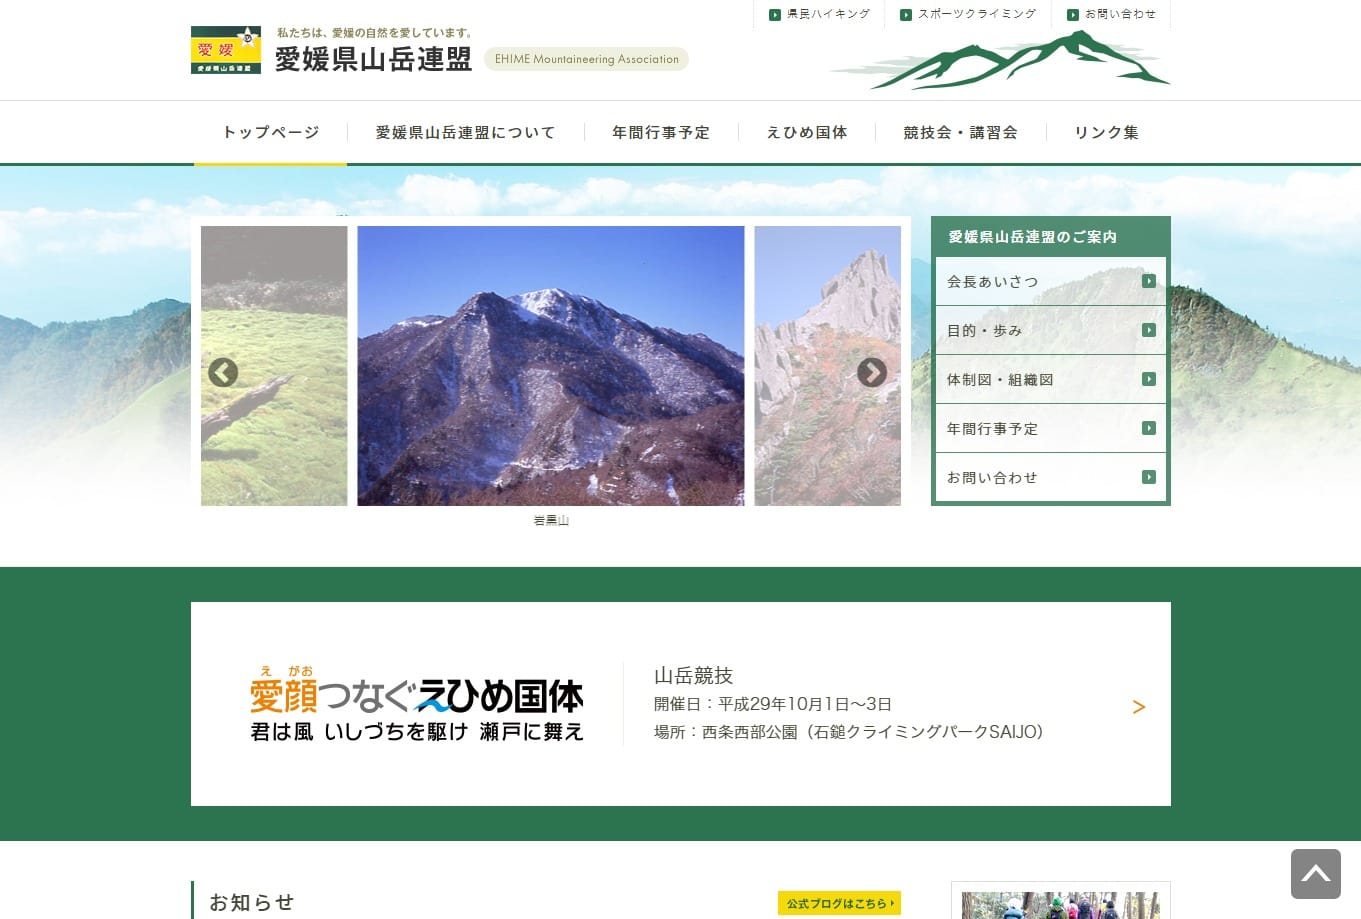 「愛媛県山岳連盟」様 サイト制作